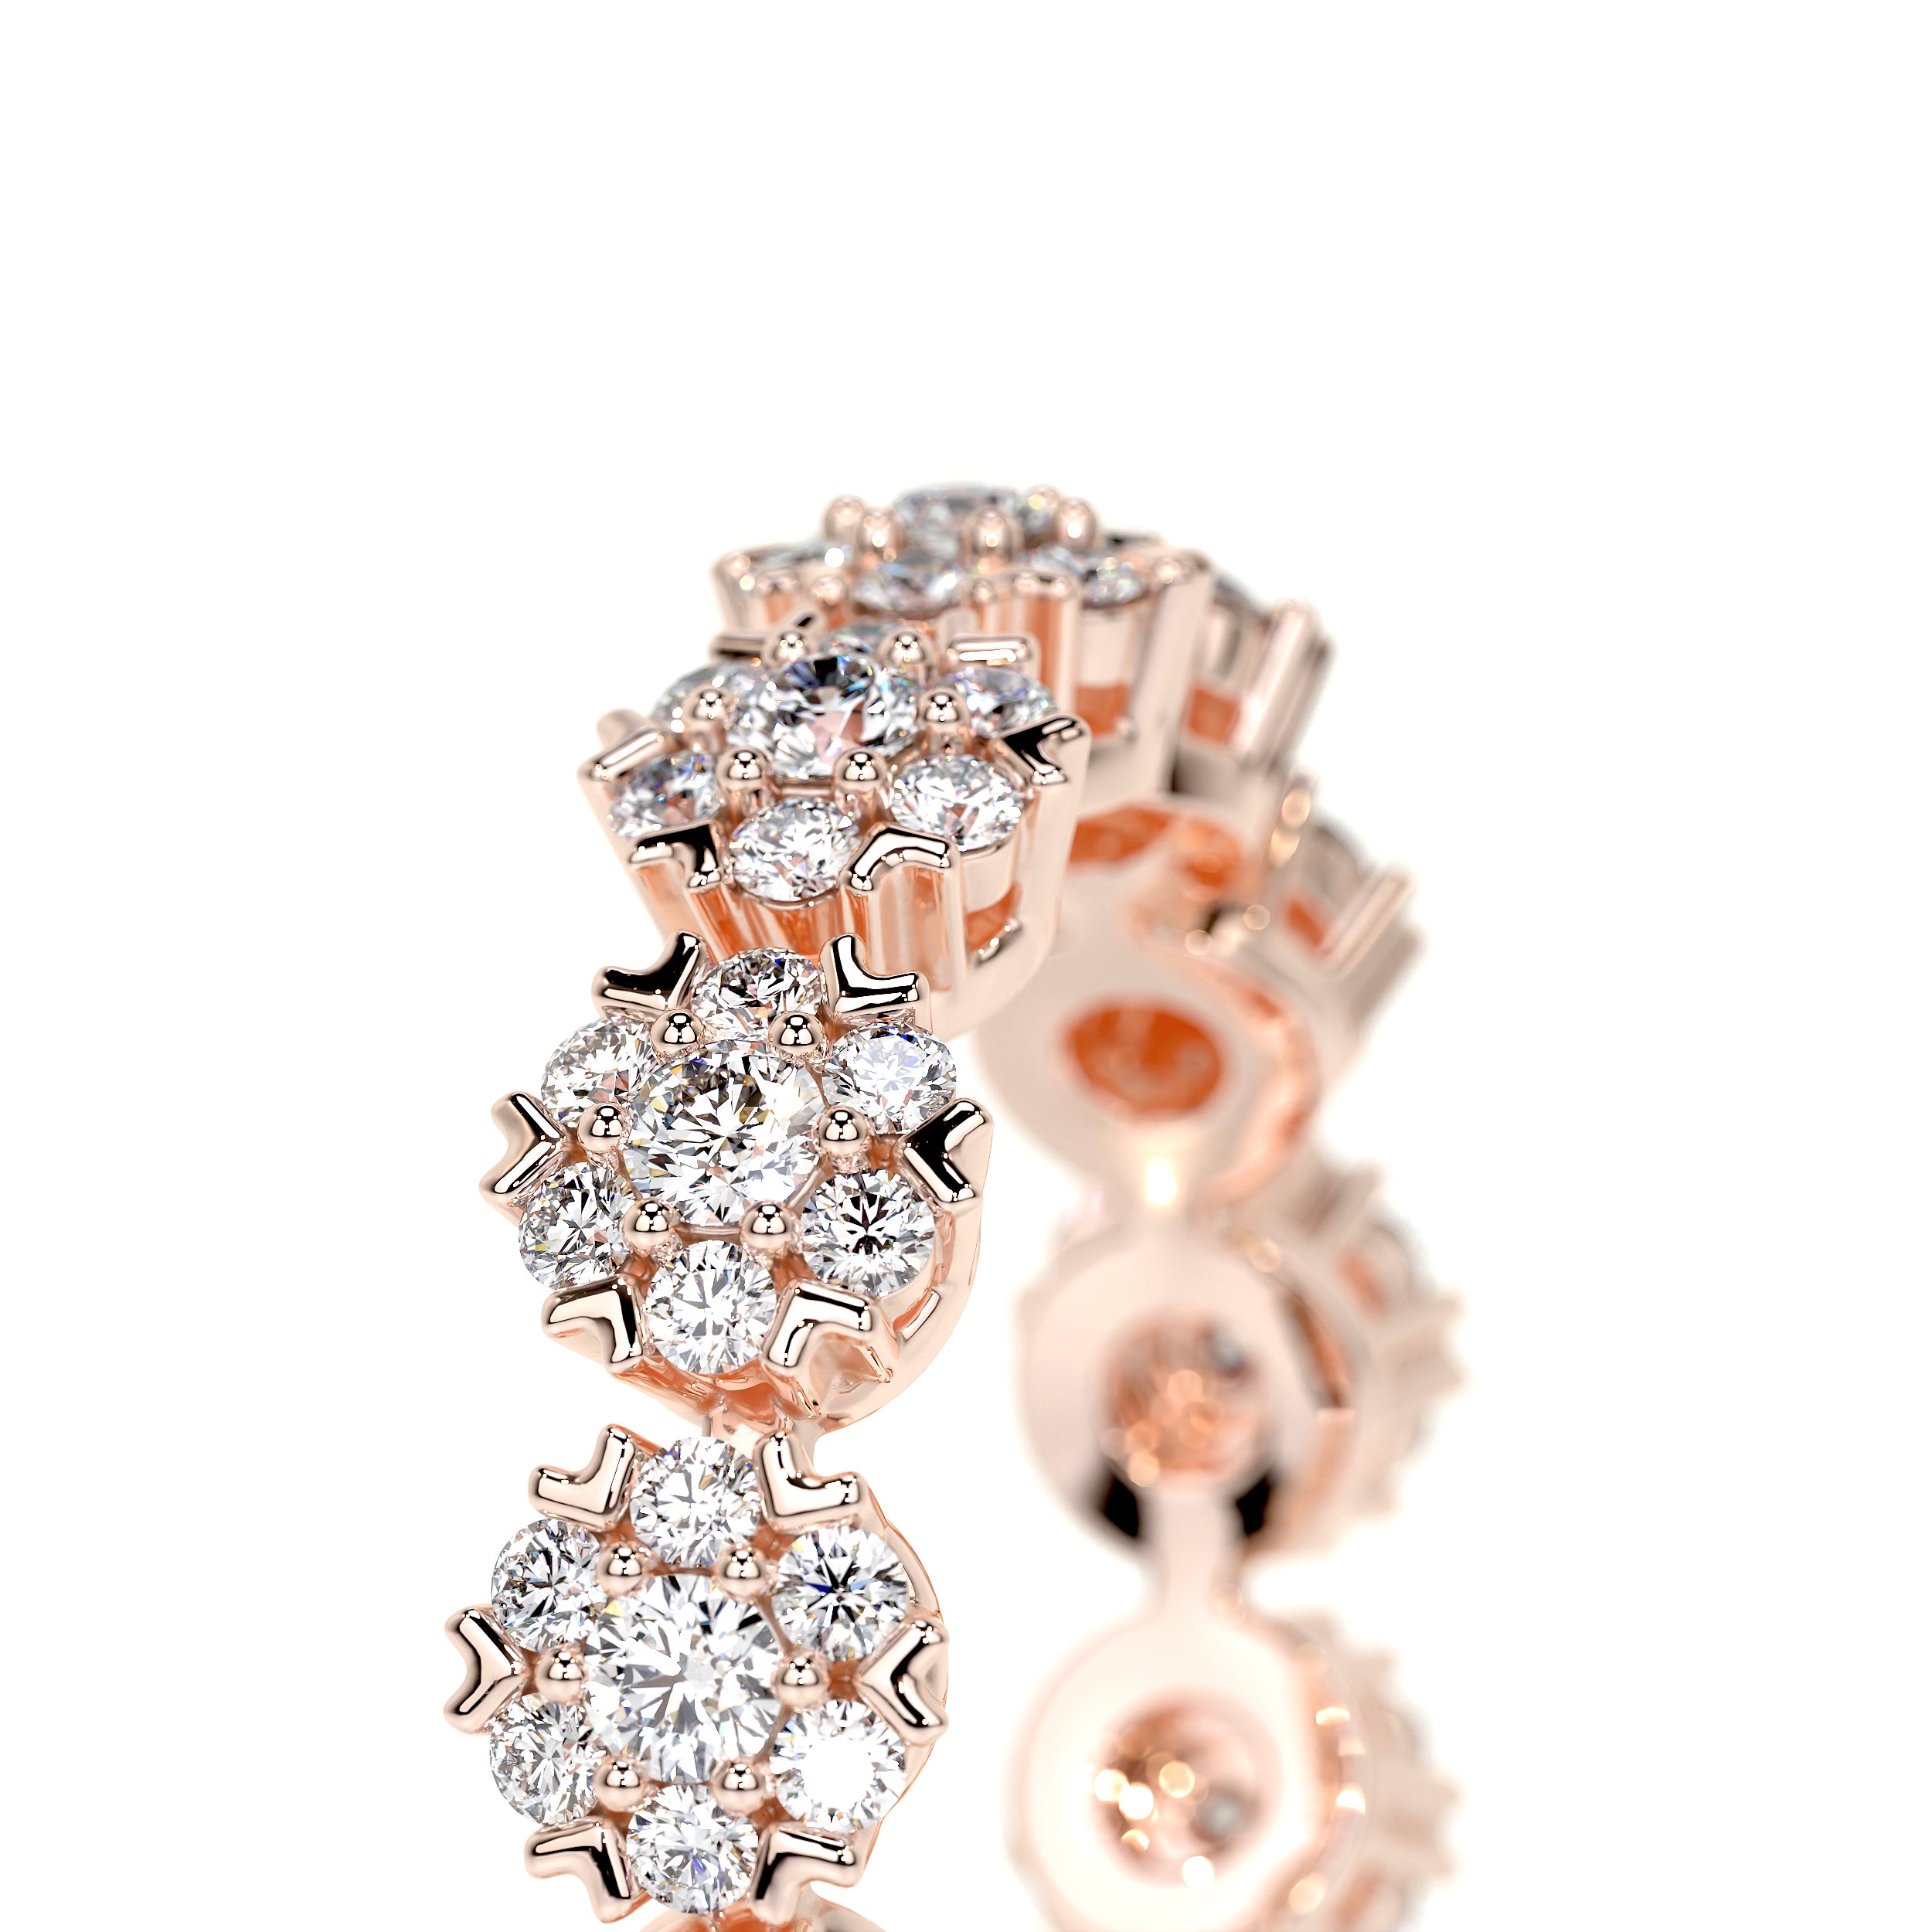 Holly Lab Grown Diamond Wedding Ring   (1 Carat) -14K Rose Gold